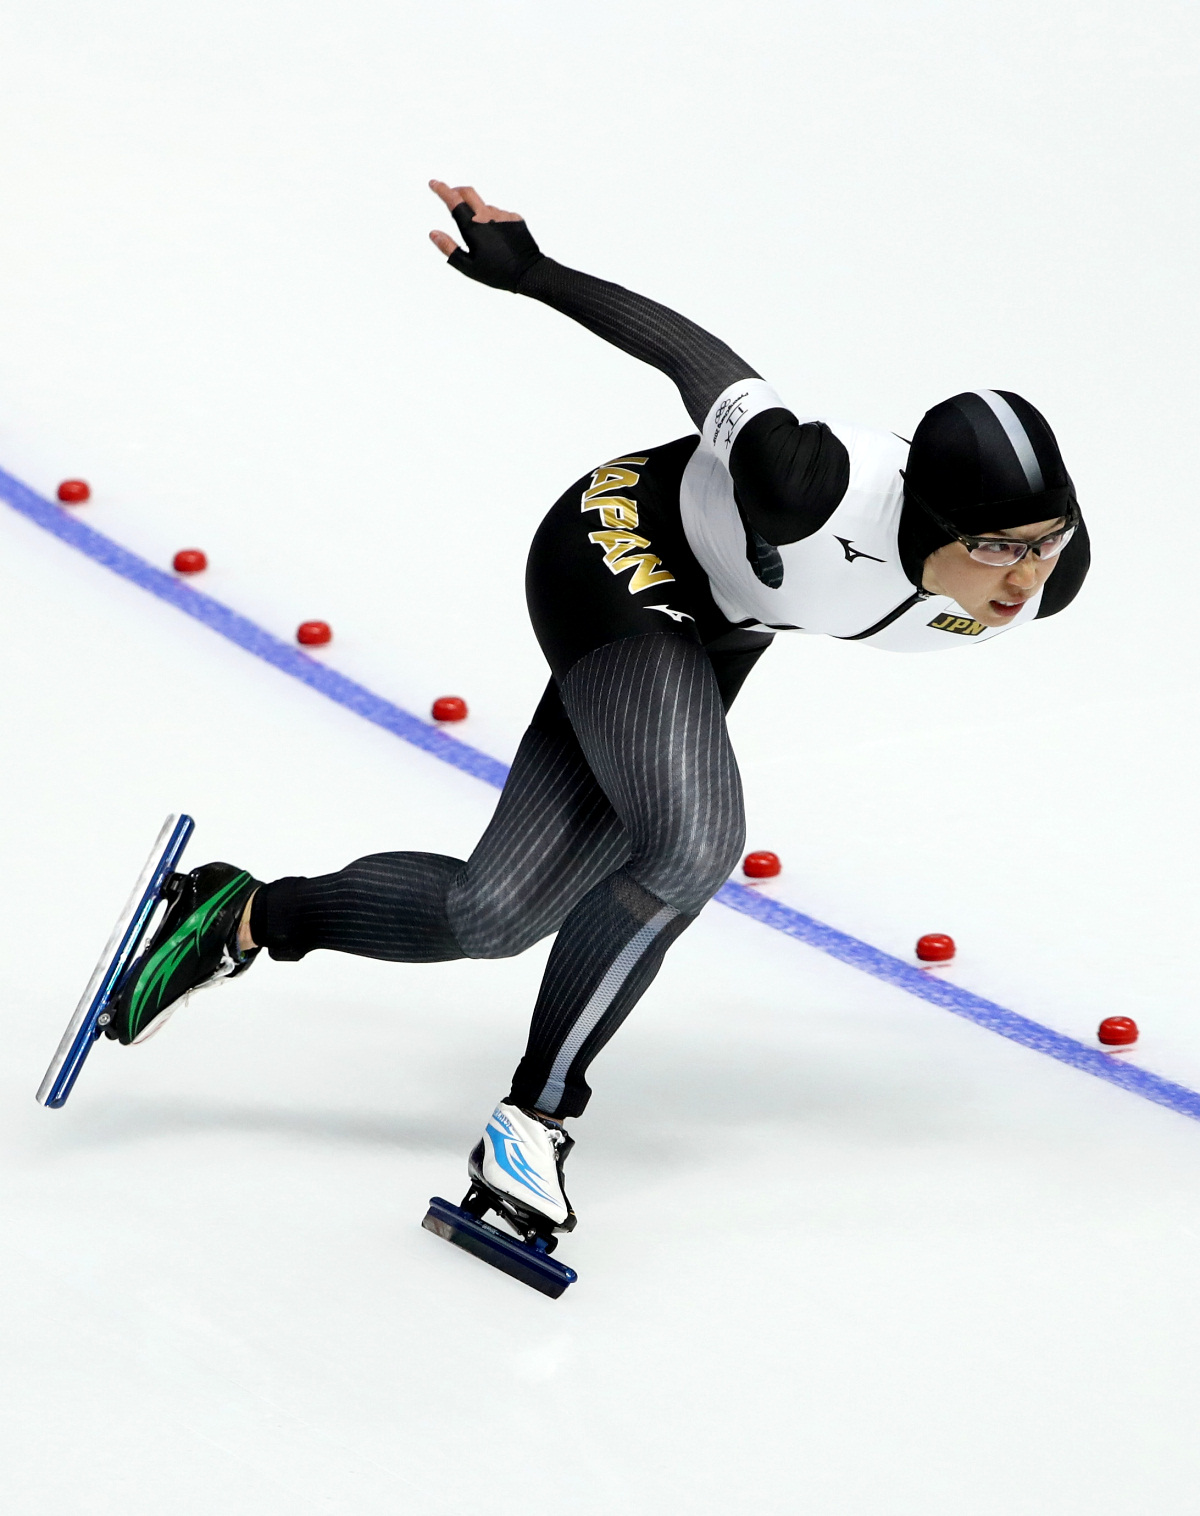 Фотогалерея: Чемпионский забег Кодайры на коньках на 500 метров